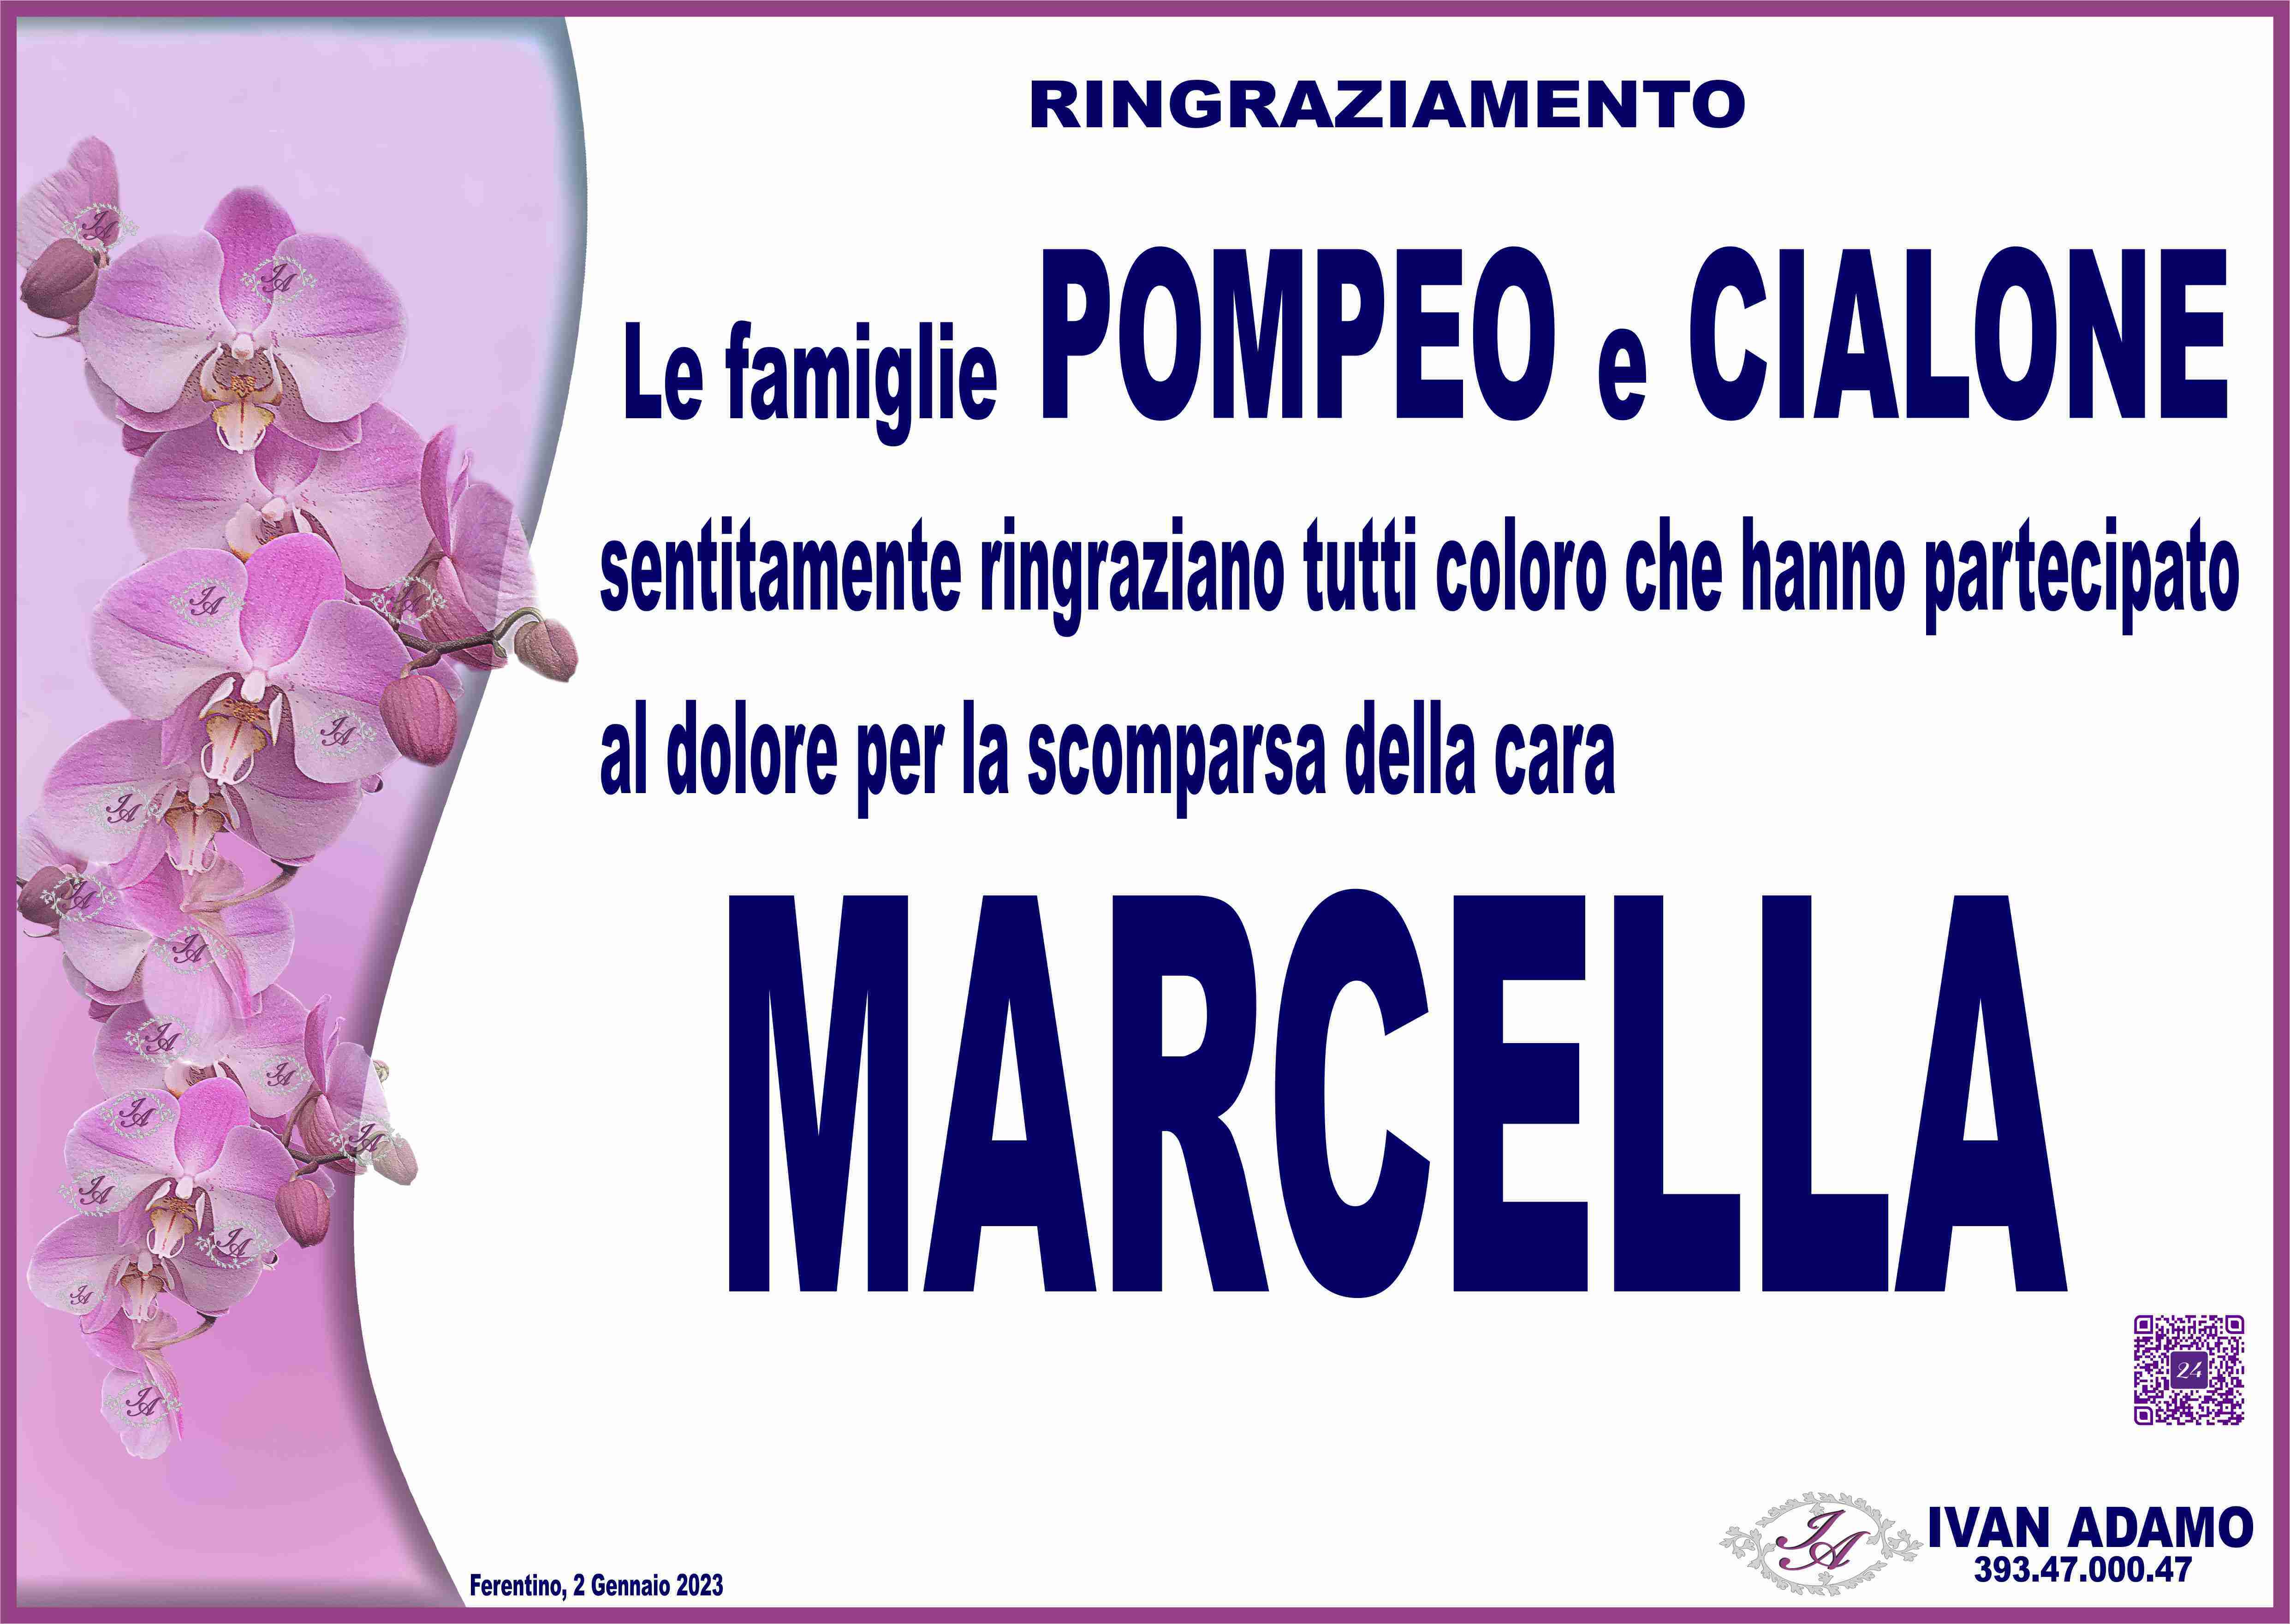 Marcella Cialone